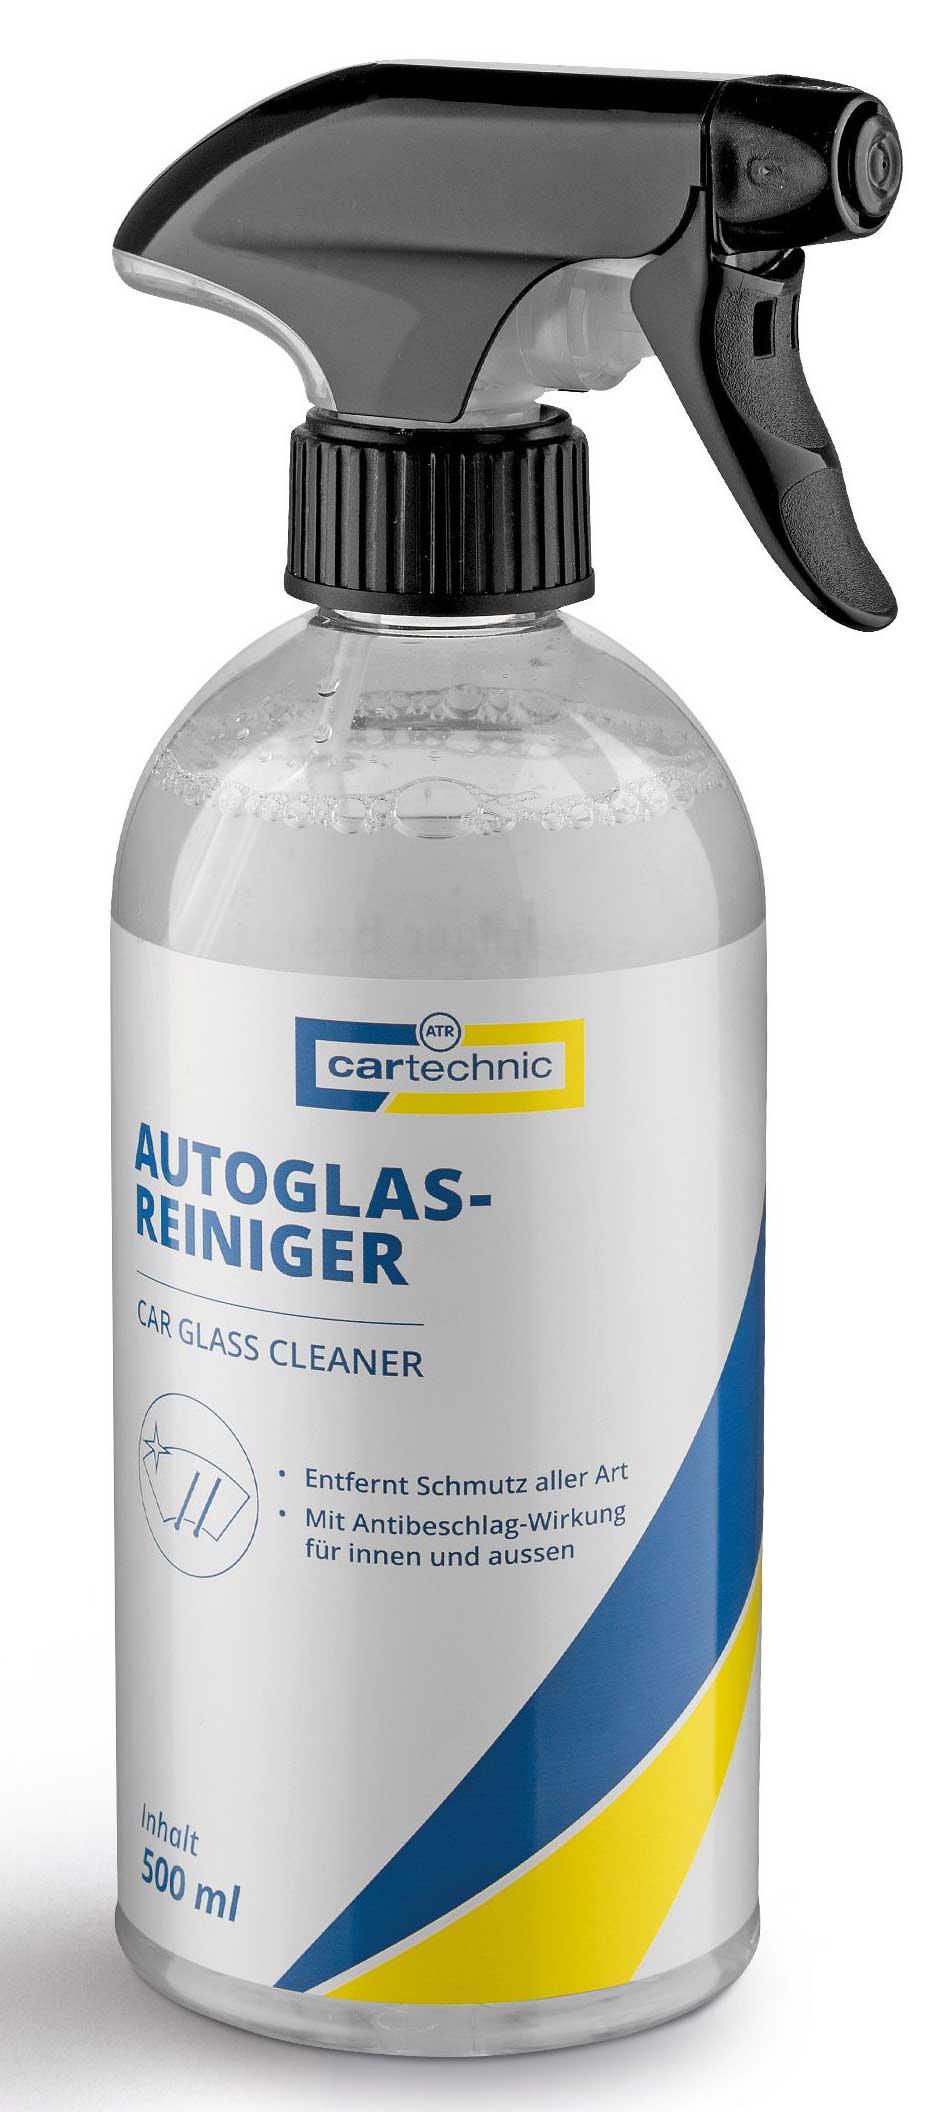 Cartechnic Autoglas-Reiniger 500 ml 40 27289 00358 0